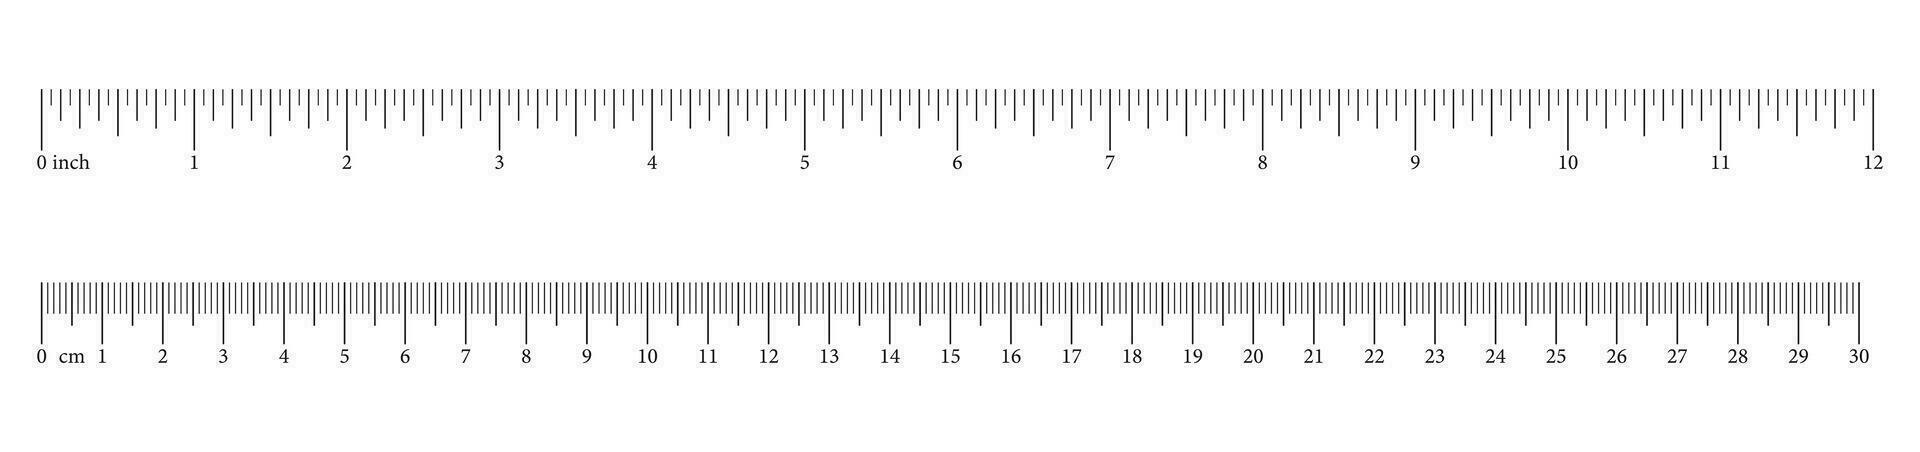 medindo gráficos com 30 centímetros, 12 polegadas. governantes escala com números. comprimento medição matemática, distância, altura. conjunto do de costura ferramenta. vetor ilustração.